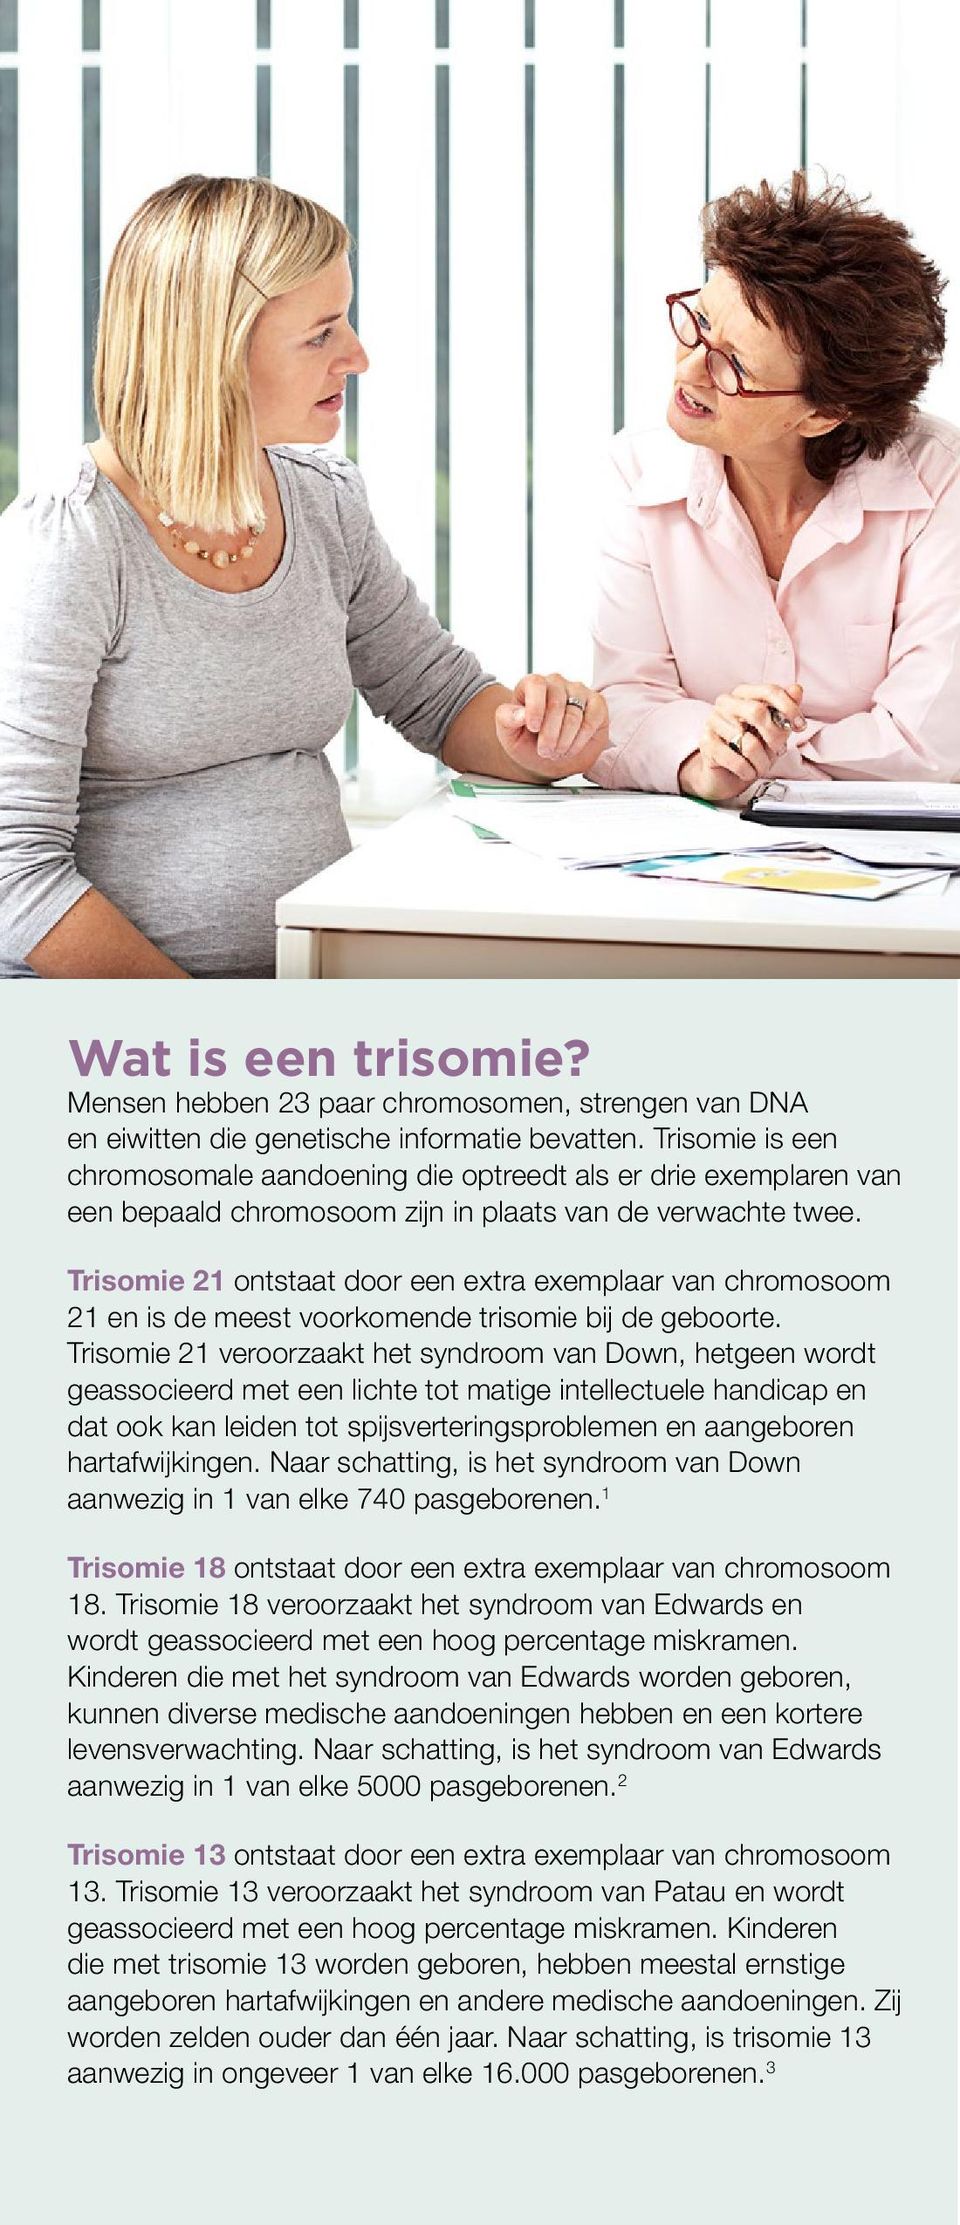 Trisomie 21 ontstaat door een extra exemplaar van chromosoom 21 en is de meest voorkomende trisomie bij de geboorte.